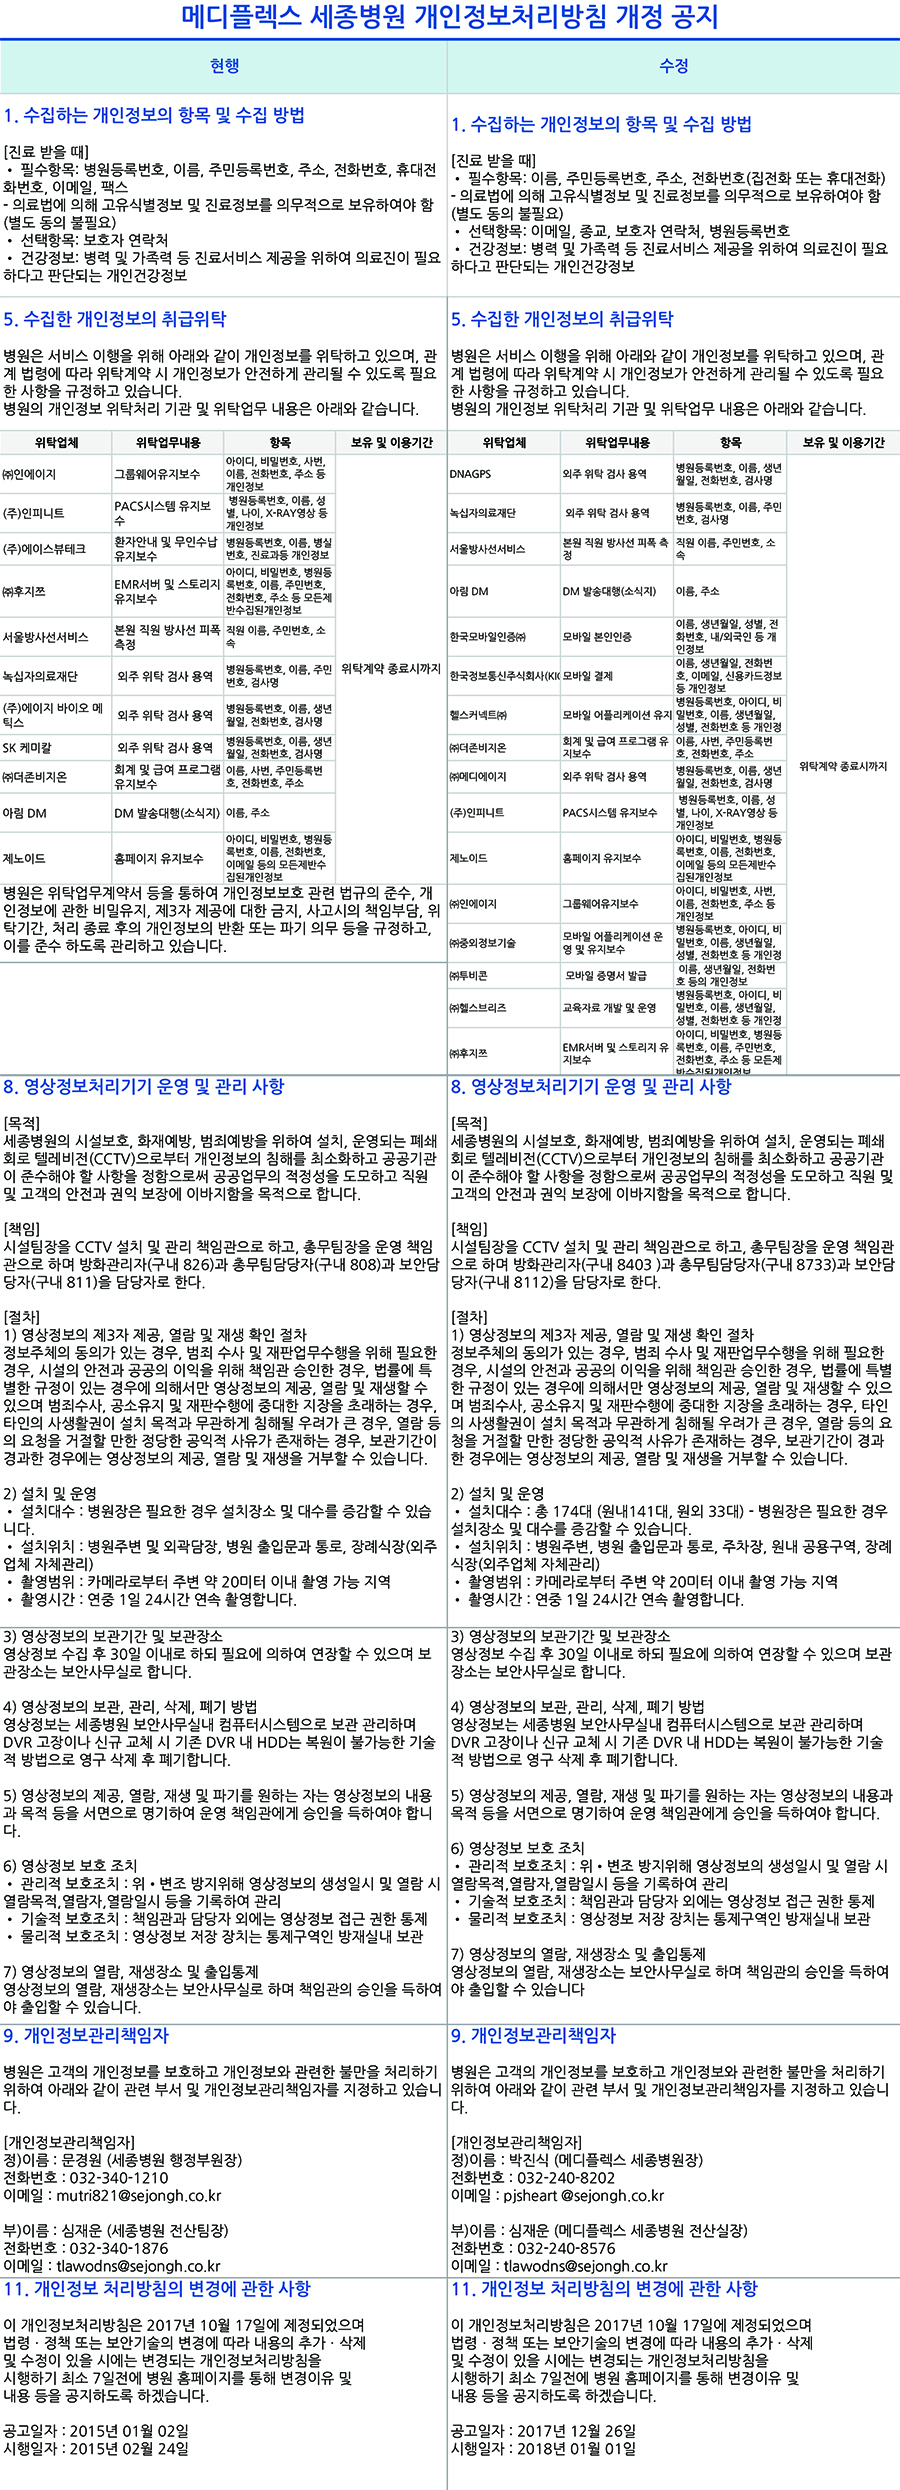 0102메디개인정보개정.jpg